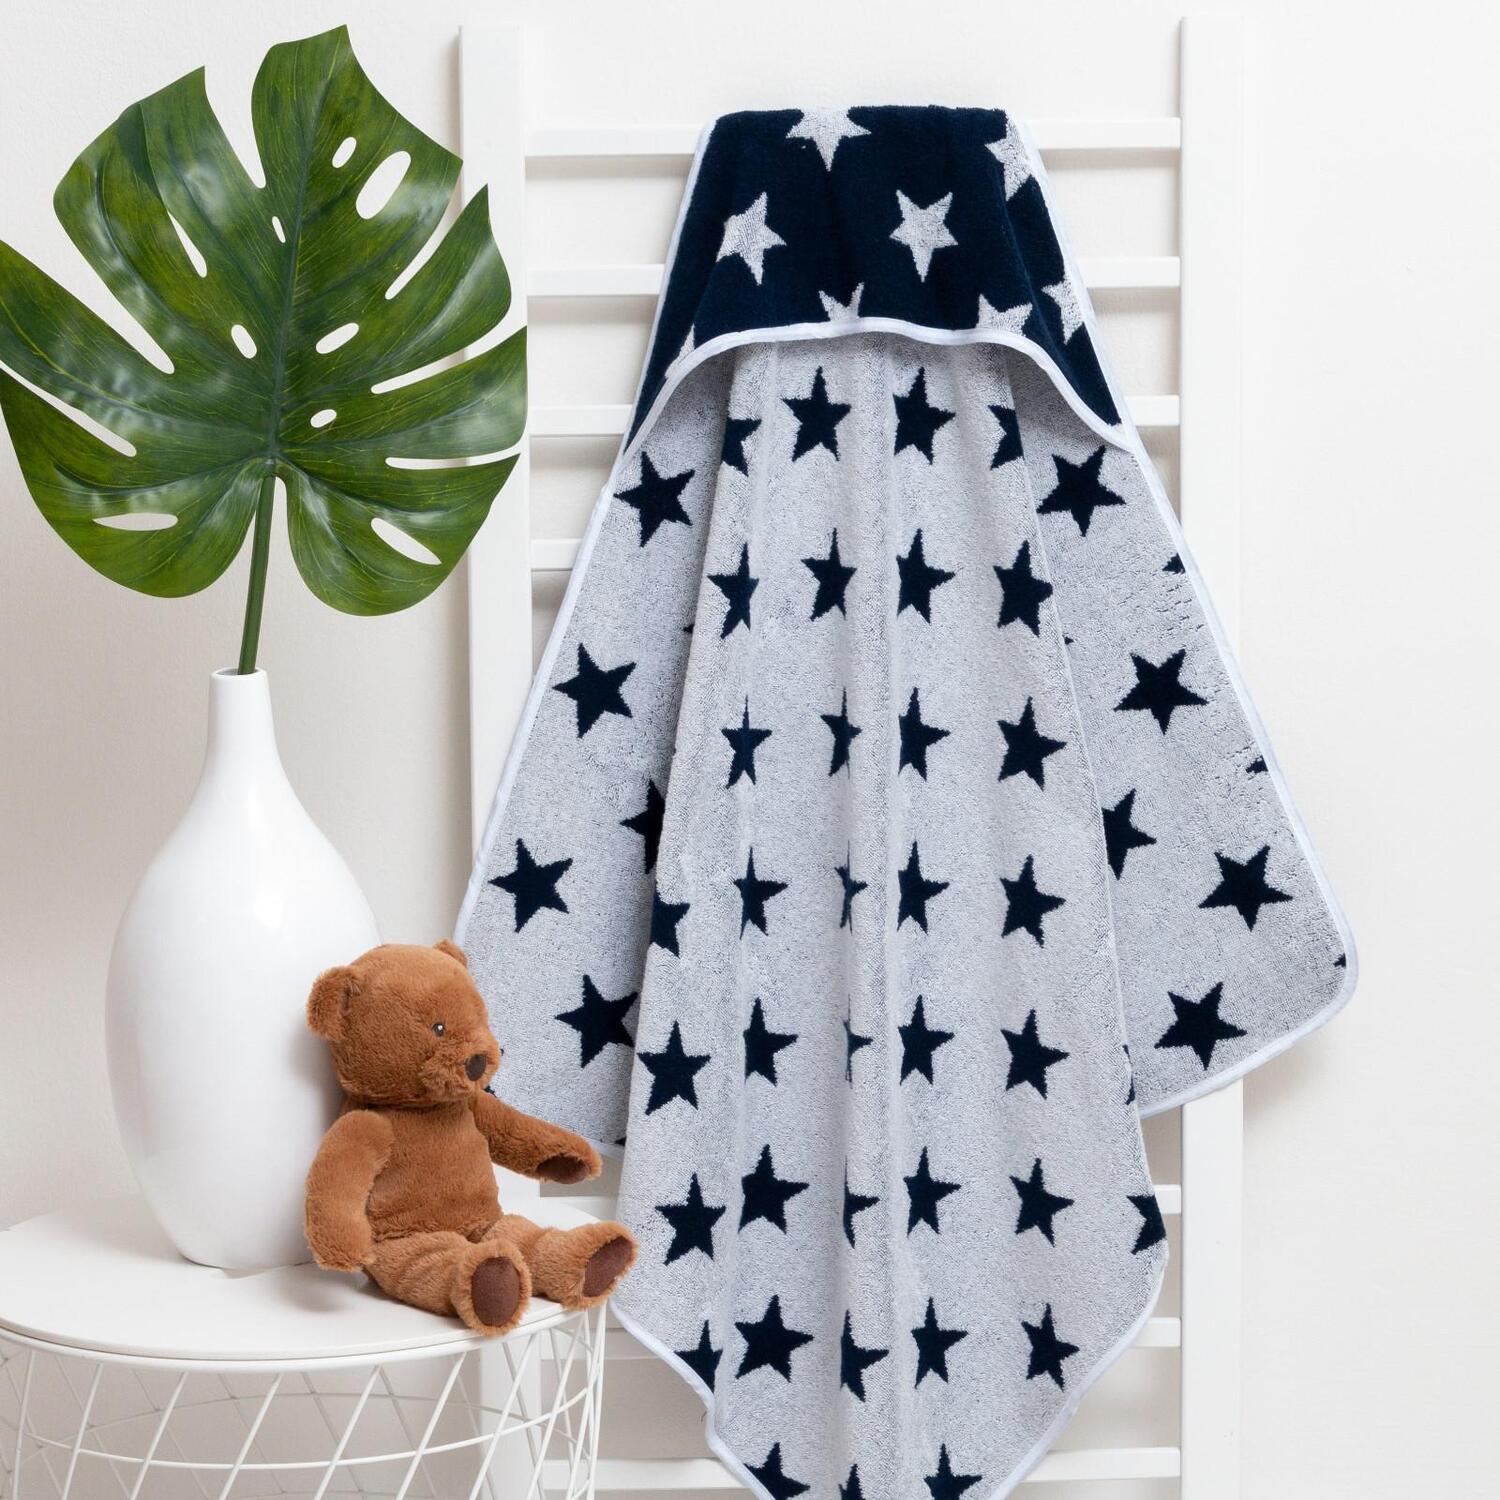 Детское полотенце Звездочки цвет: синий (85х85 см), размер 85х85 см ros799842 Детское полотенце Звездочки цвет: синий (85х85 см) - фото 1